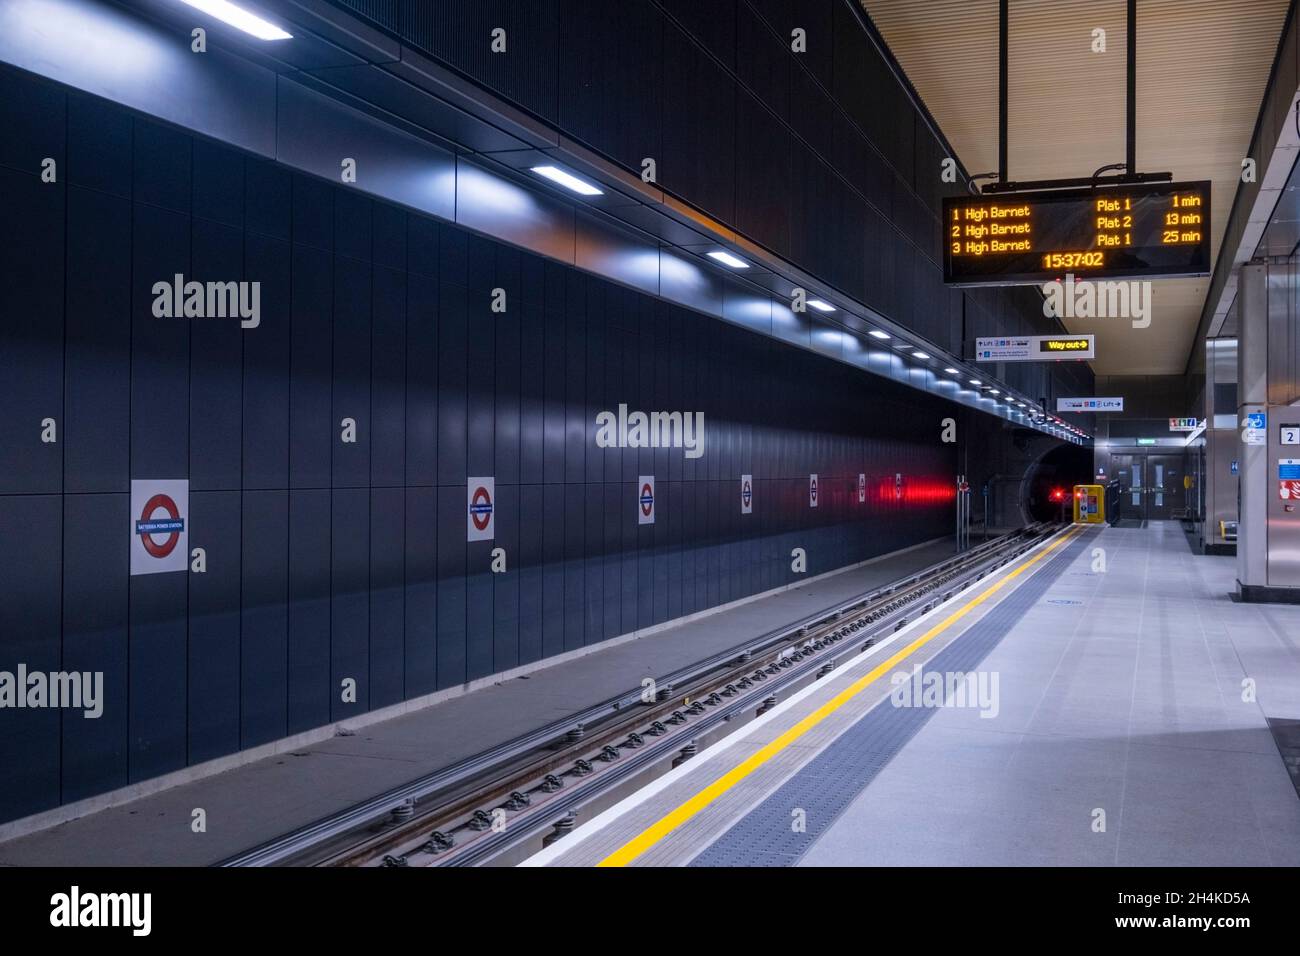 Battersea Power Station ; station de métro, personne, Northern Line, plate-forme intérieure,Panneaux indiquant la station de métro, métro, Londres, Royaume-Uni Banque D'Images